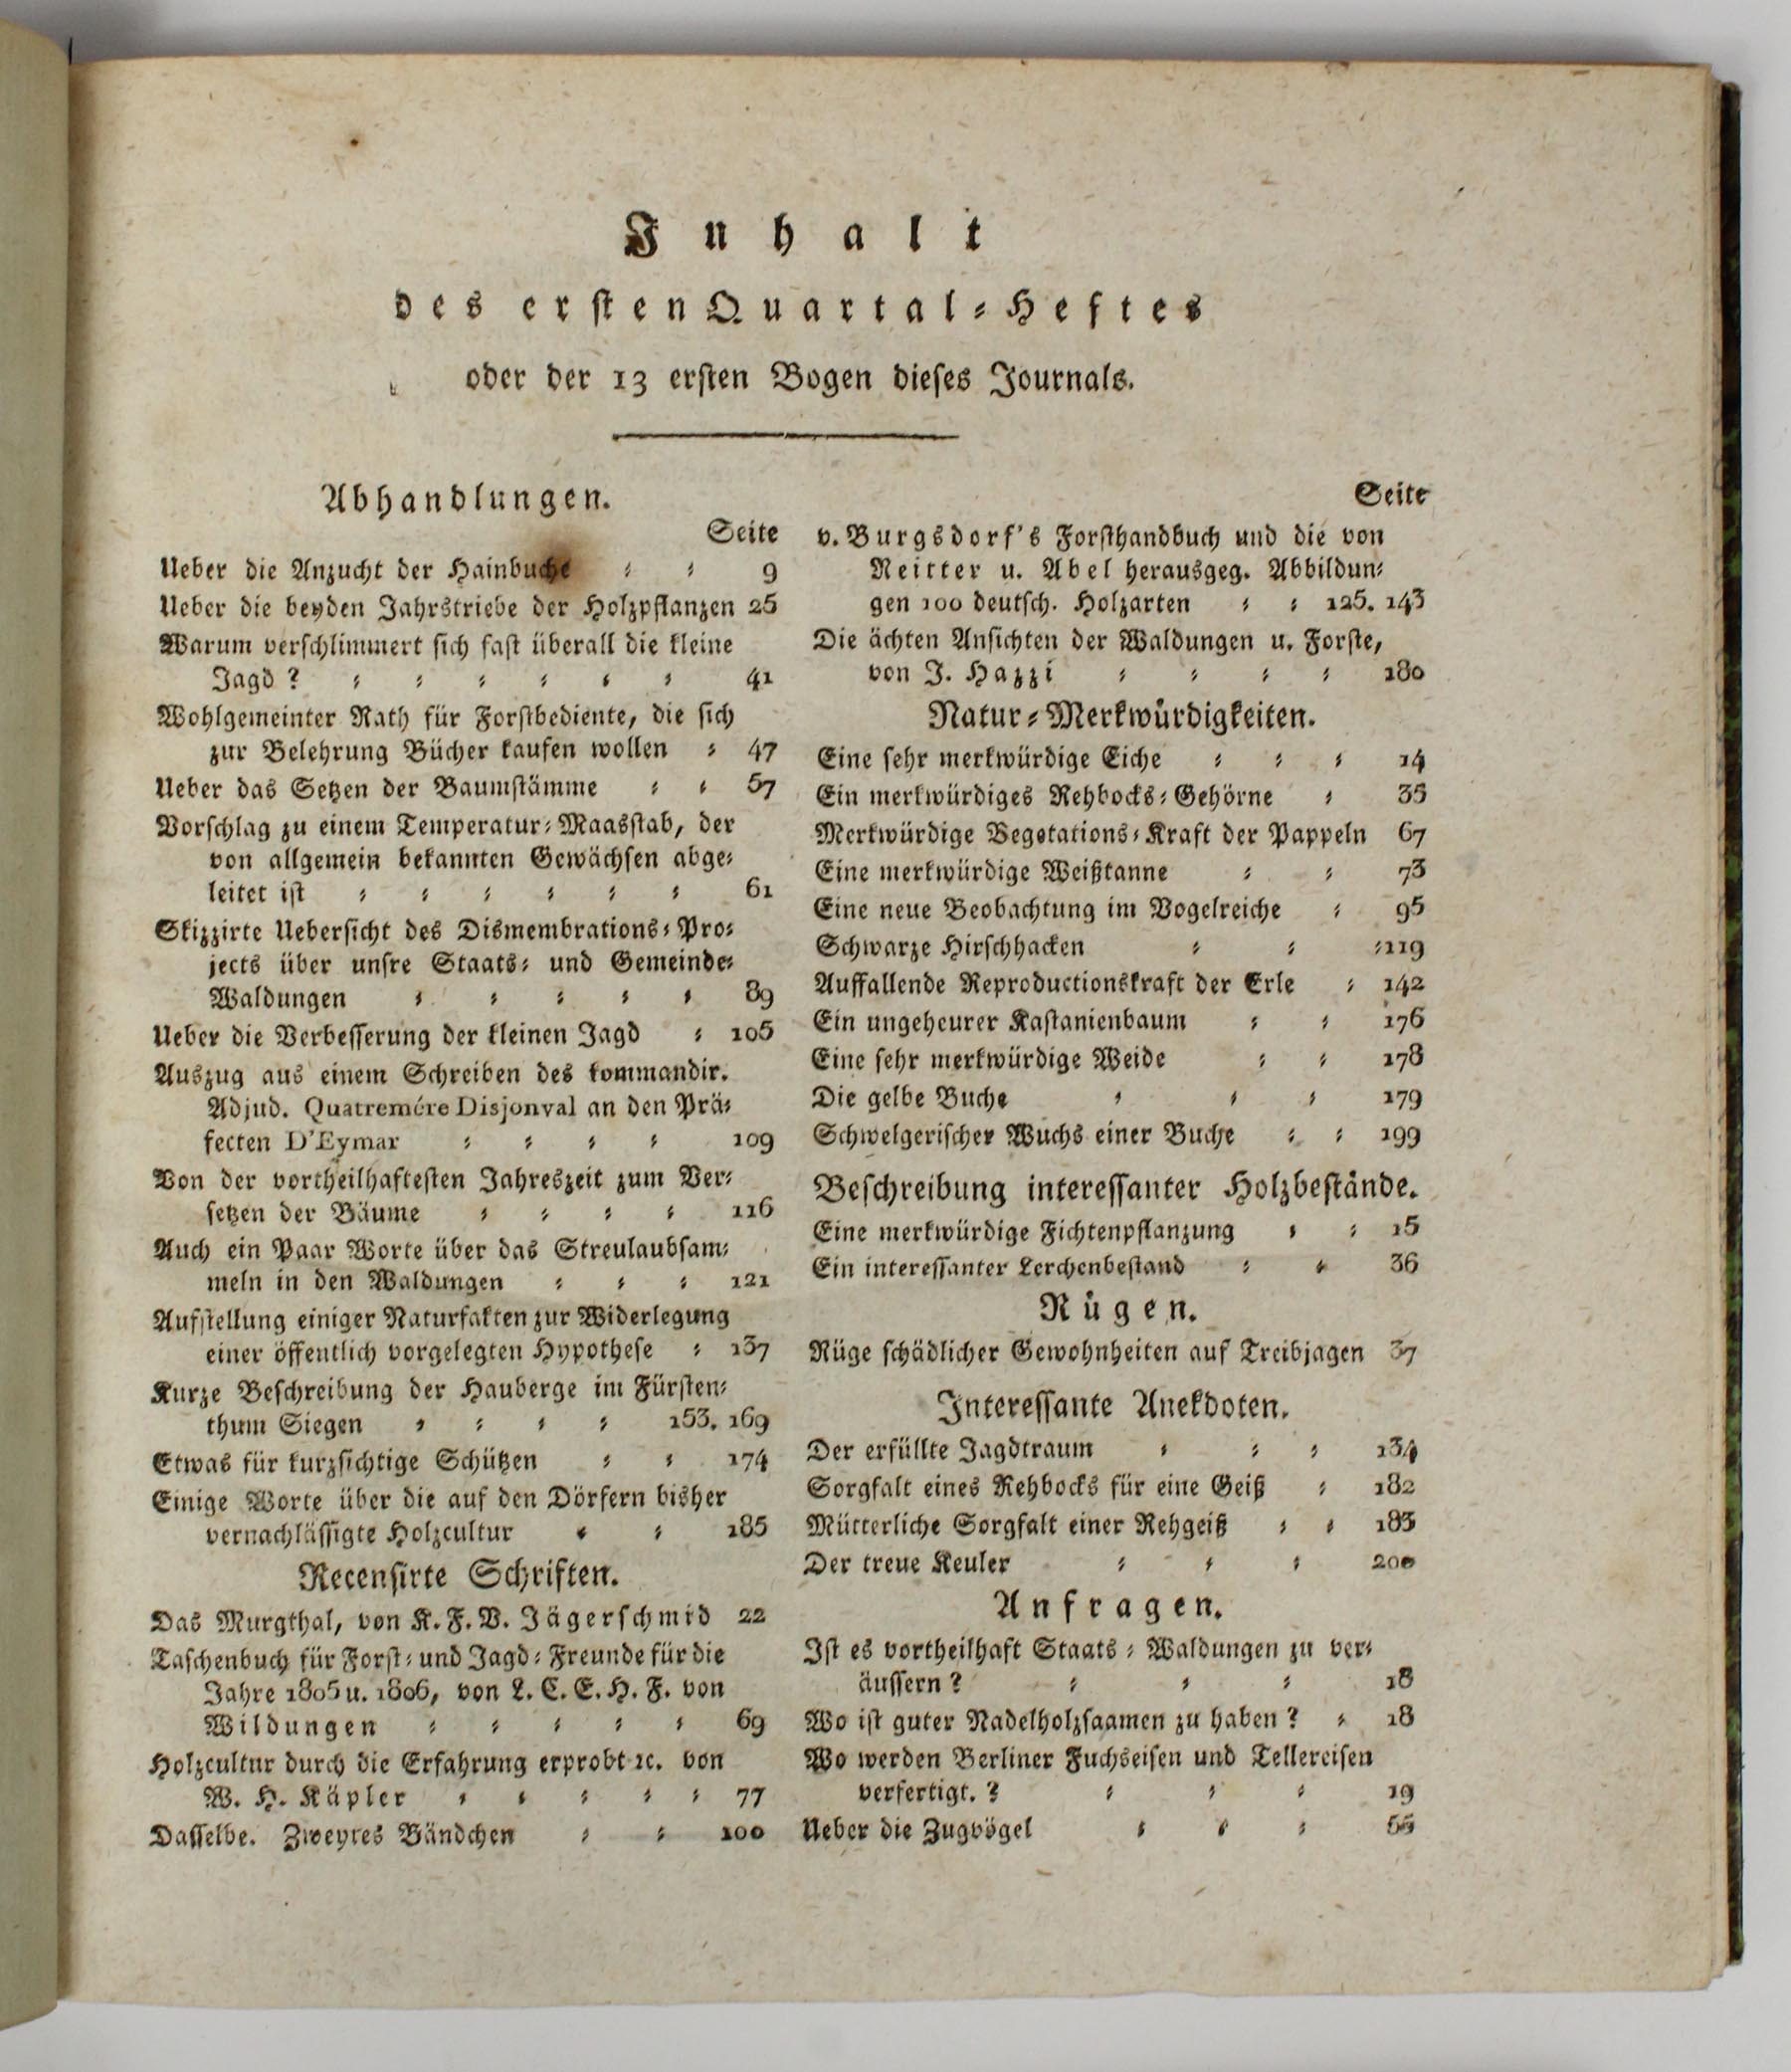 Journal. 4 Bände (Hefte). 1806. - Bild 3 aus 11